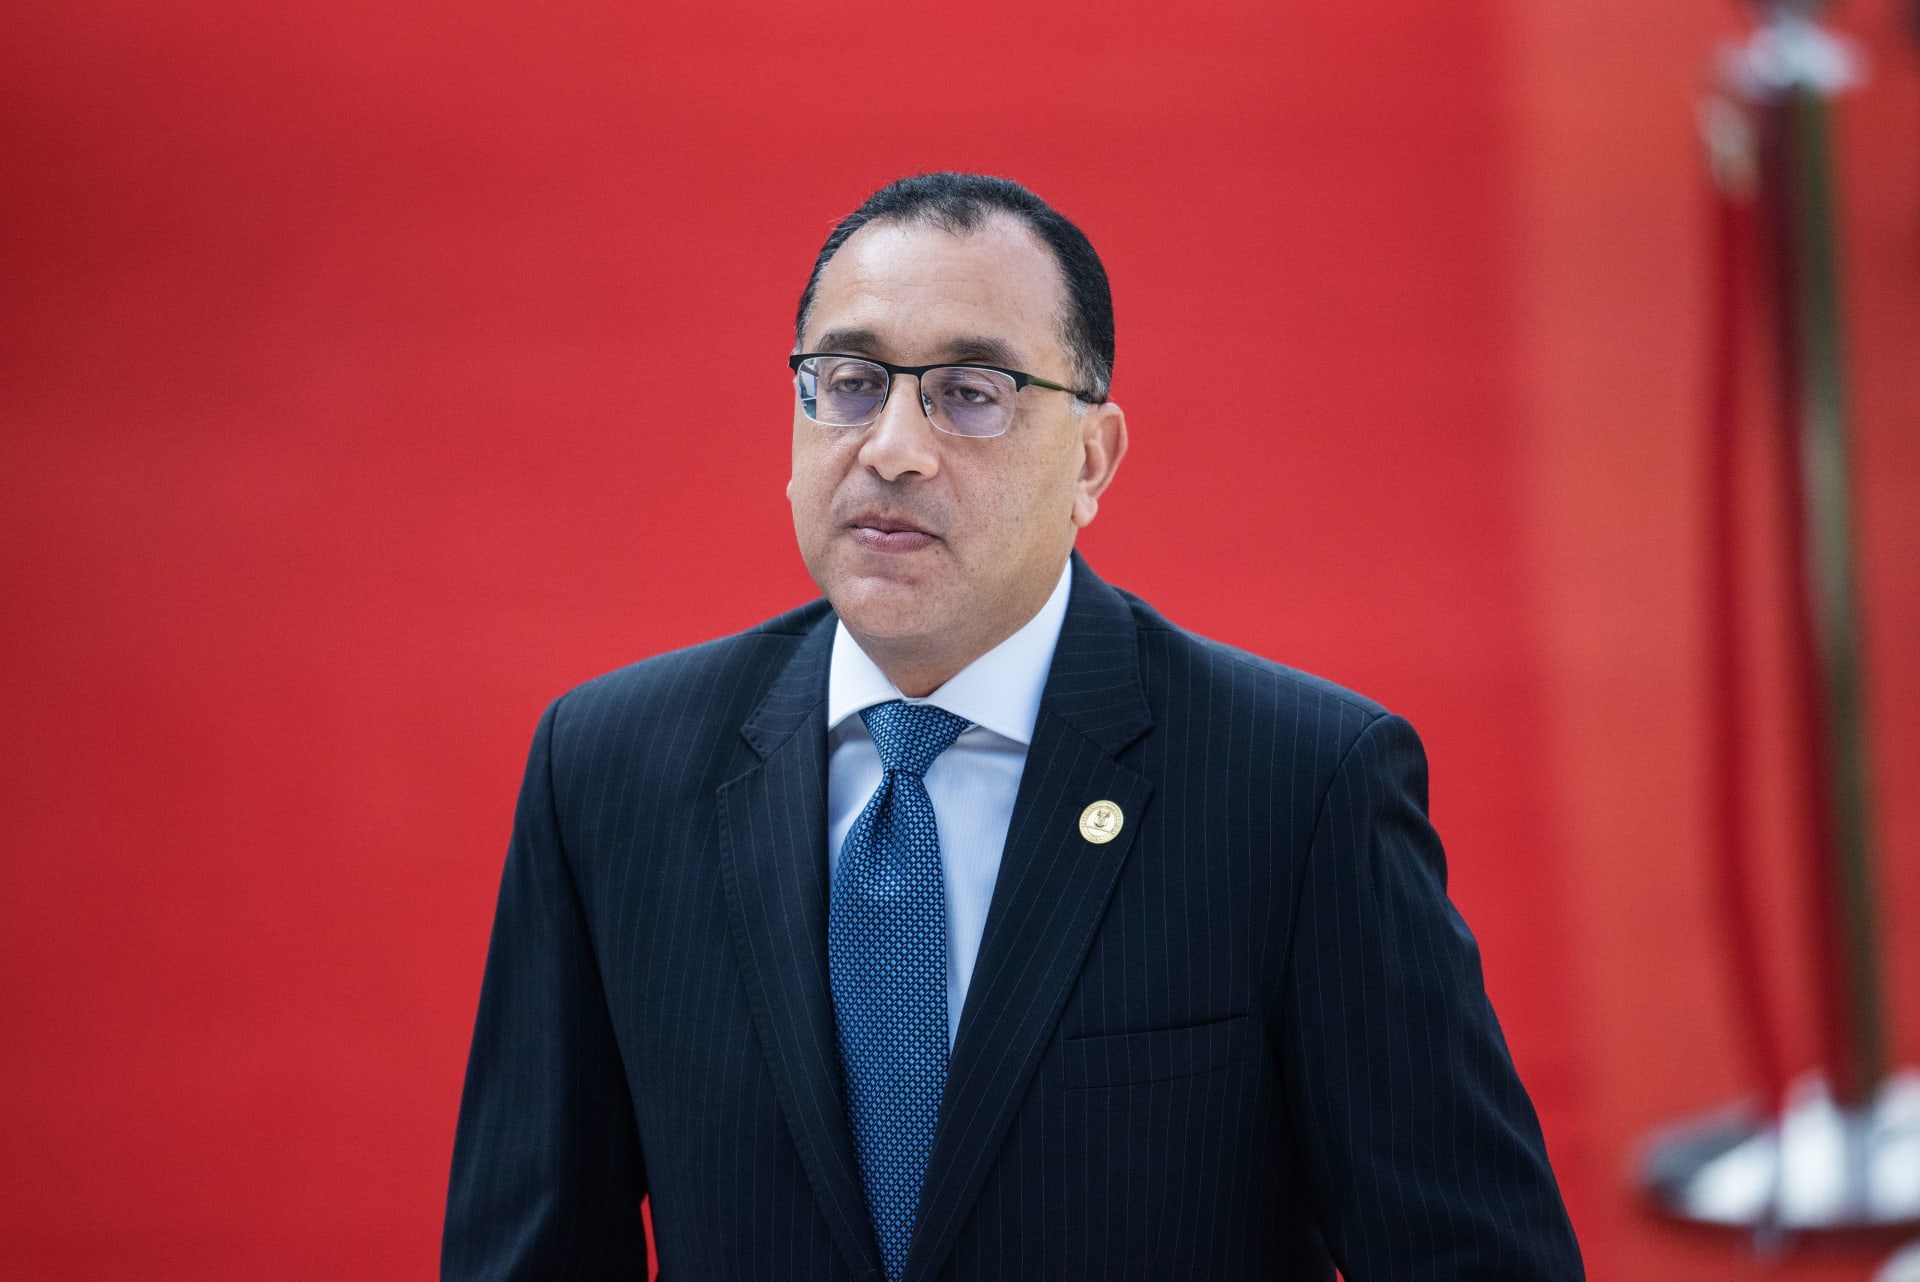 رئيس وزراء مصر يوضح سبب عدم قطع التيار الكهربائي عن المناطق السياحية والساحلية في البلاد